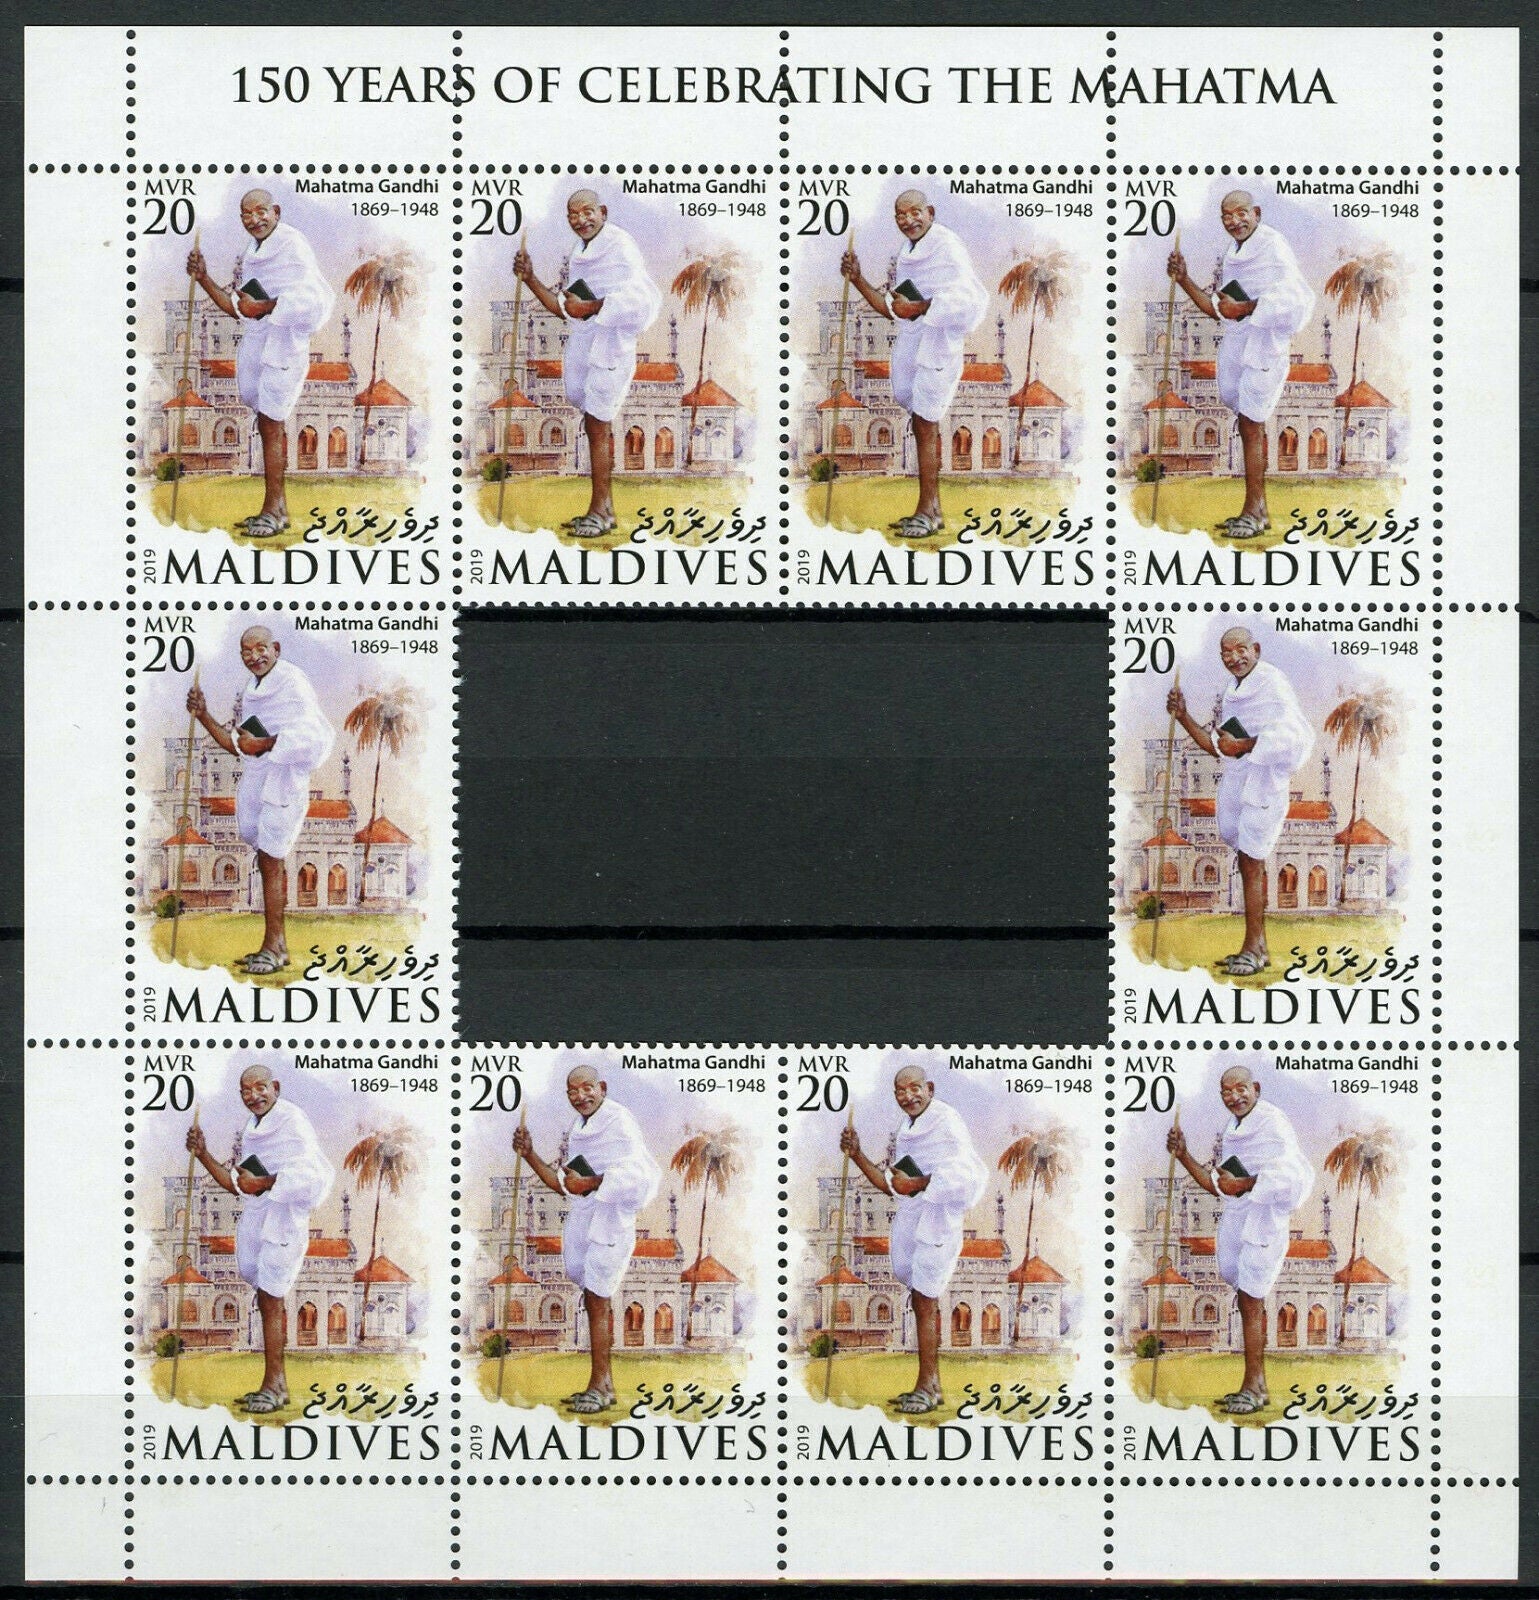 Maldives Mahatma Gandhi Stamps 2019 MNH Famous People Historical Figures 10v M/S